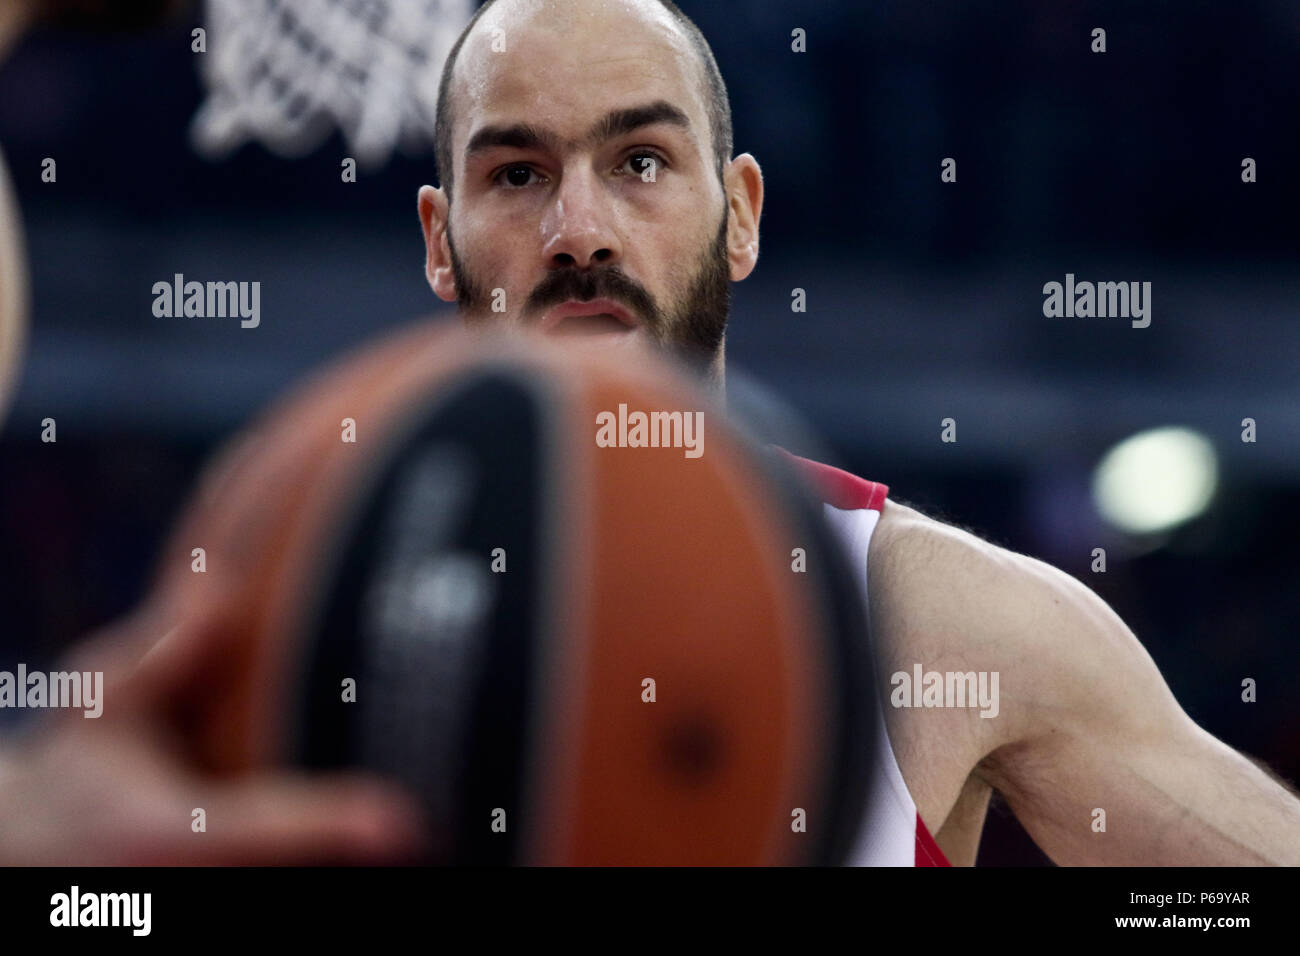 Portrait de Vasilis Spanoulis durant la saison 2017-2018 de l'Euroleague Turkish Airlines jeux en Grèce Banque D'Images